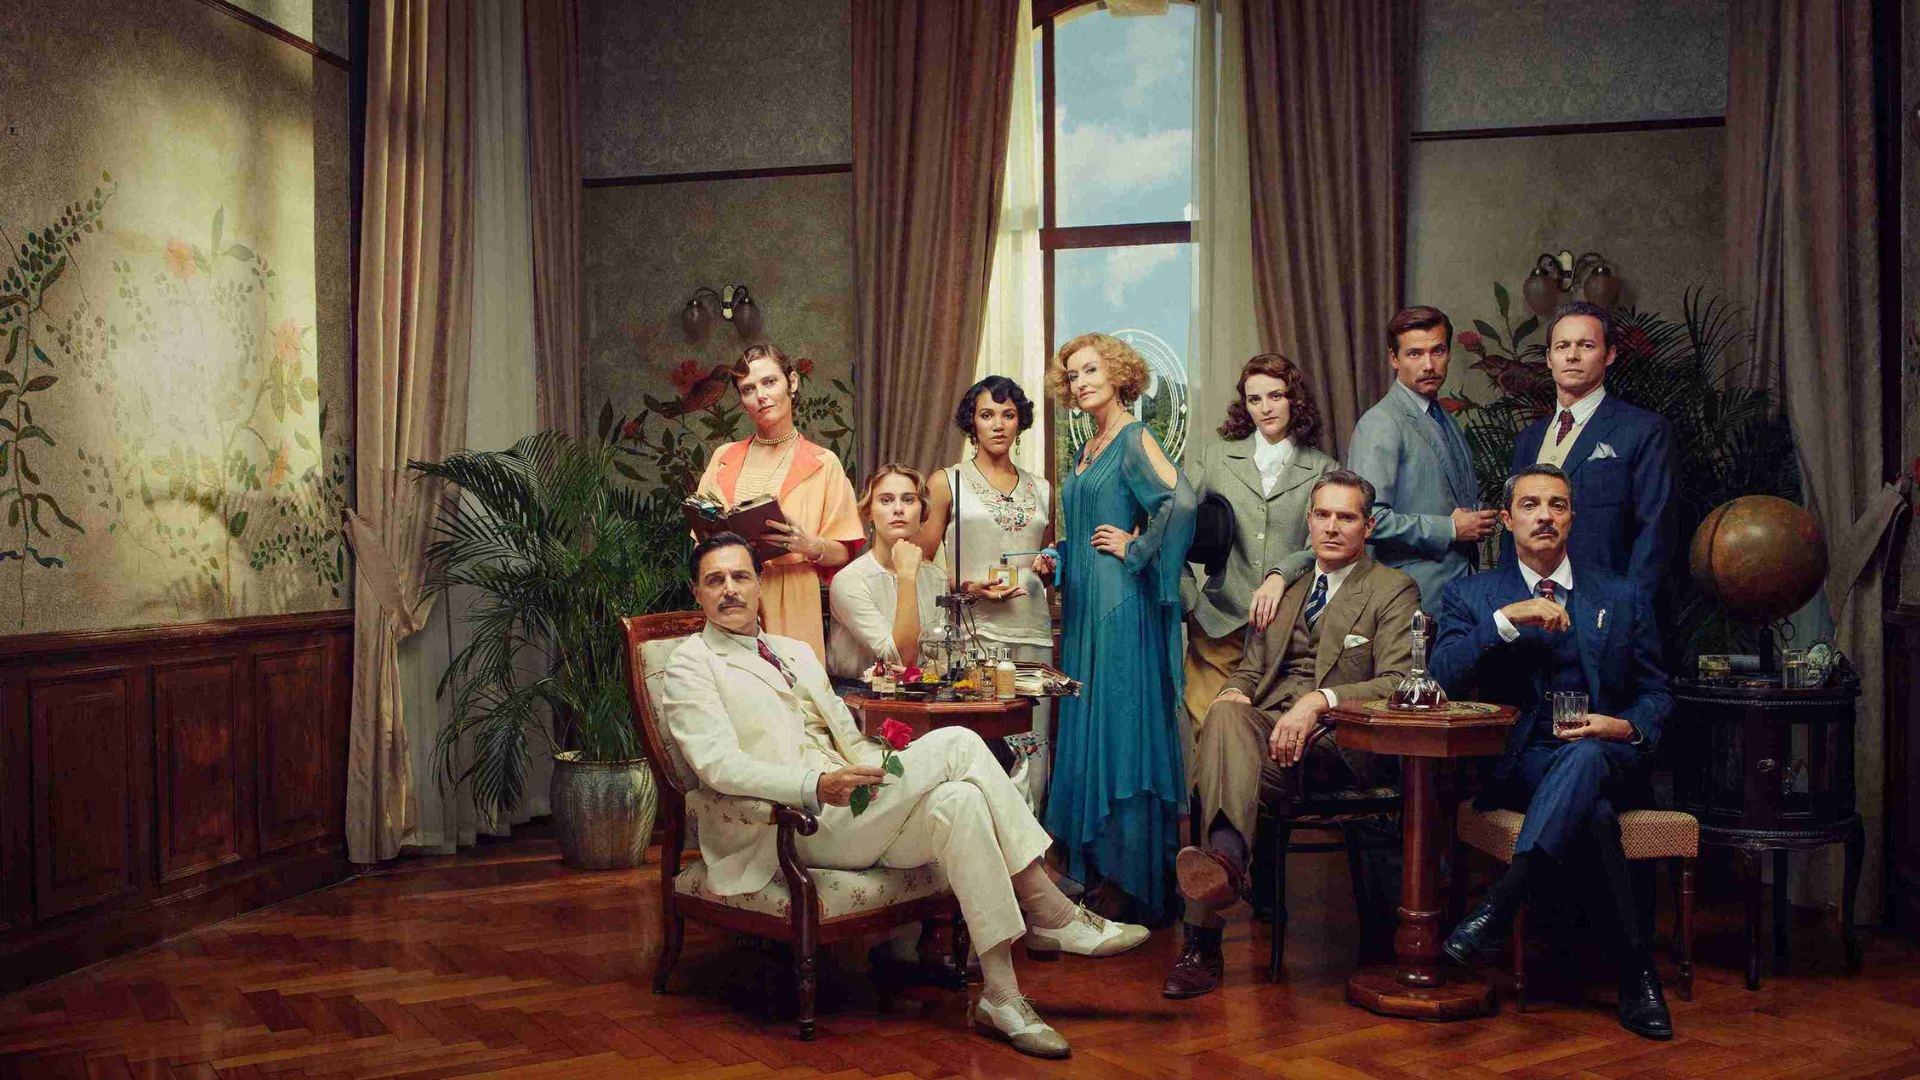 The cast of season 3 of Hotel Portofino.